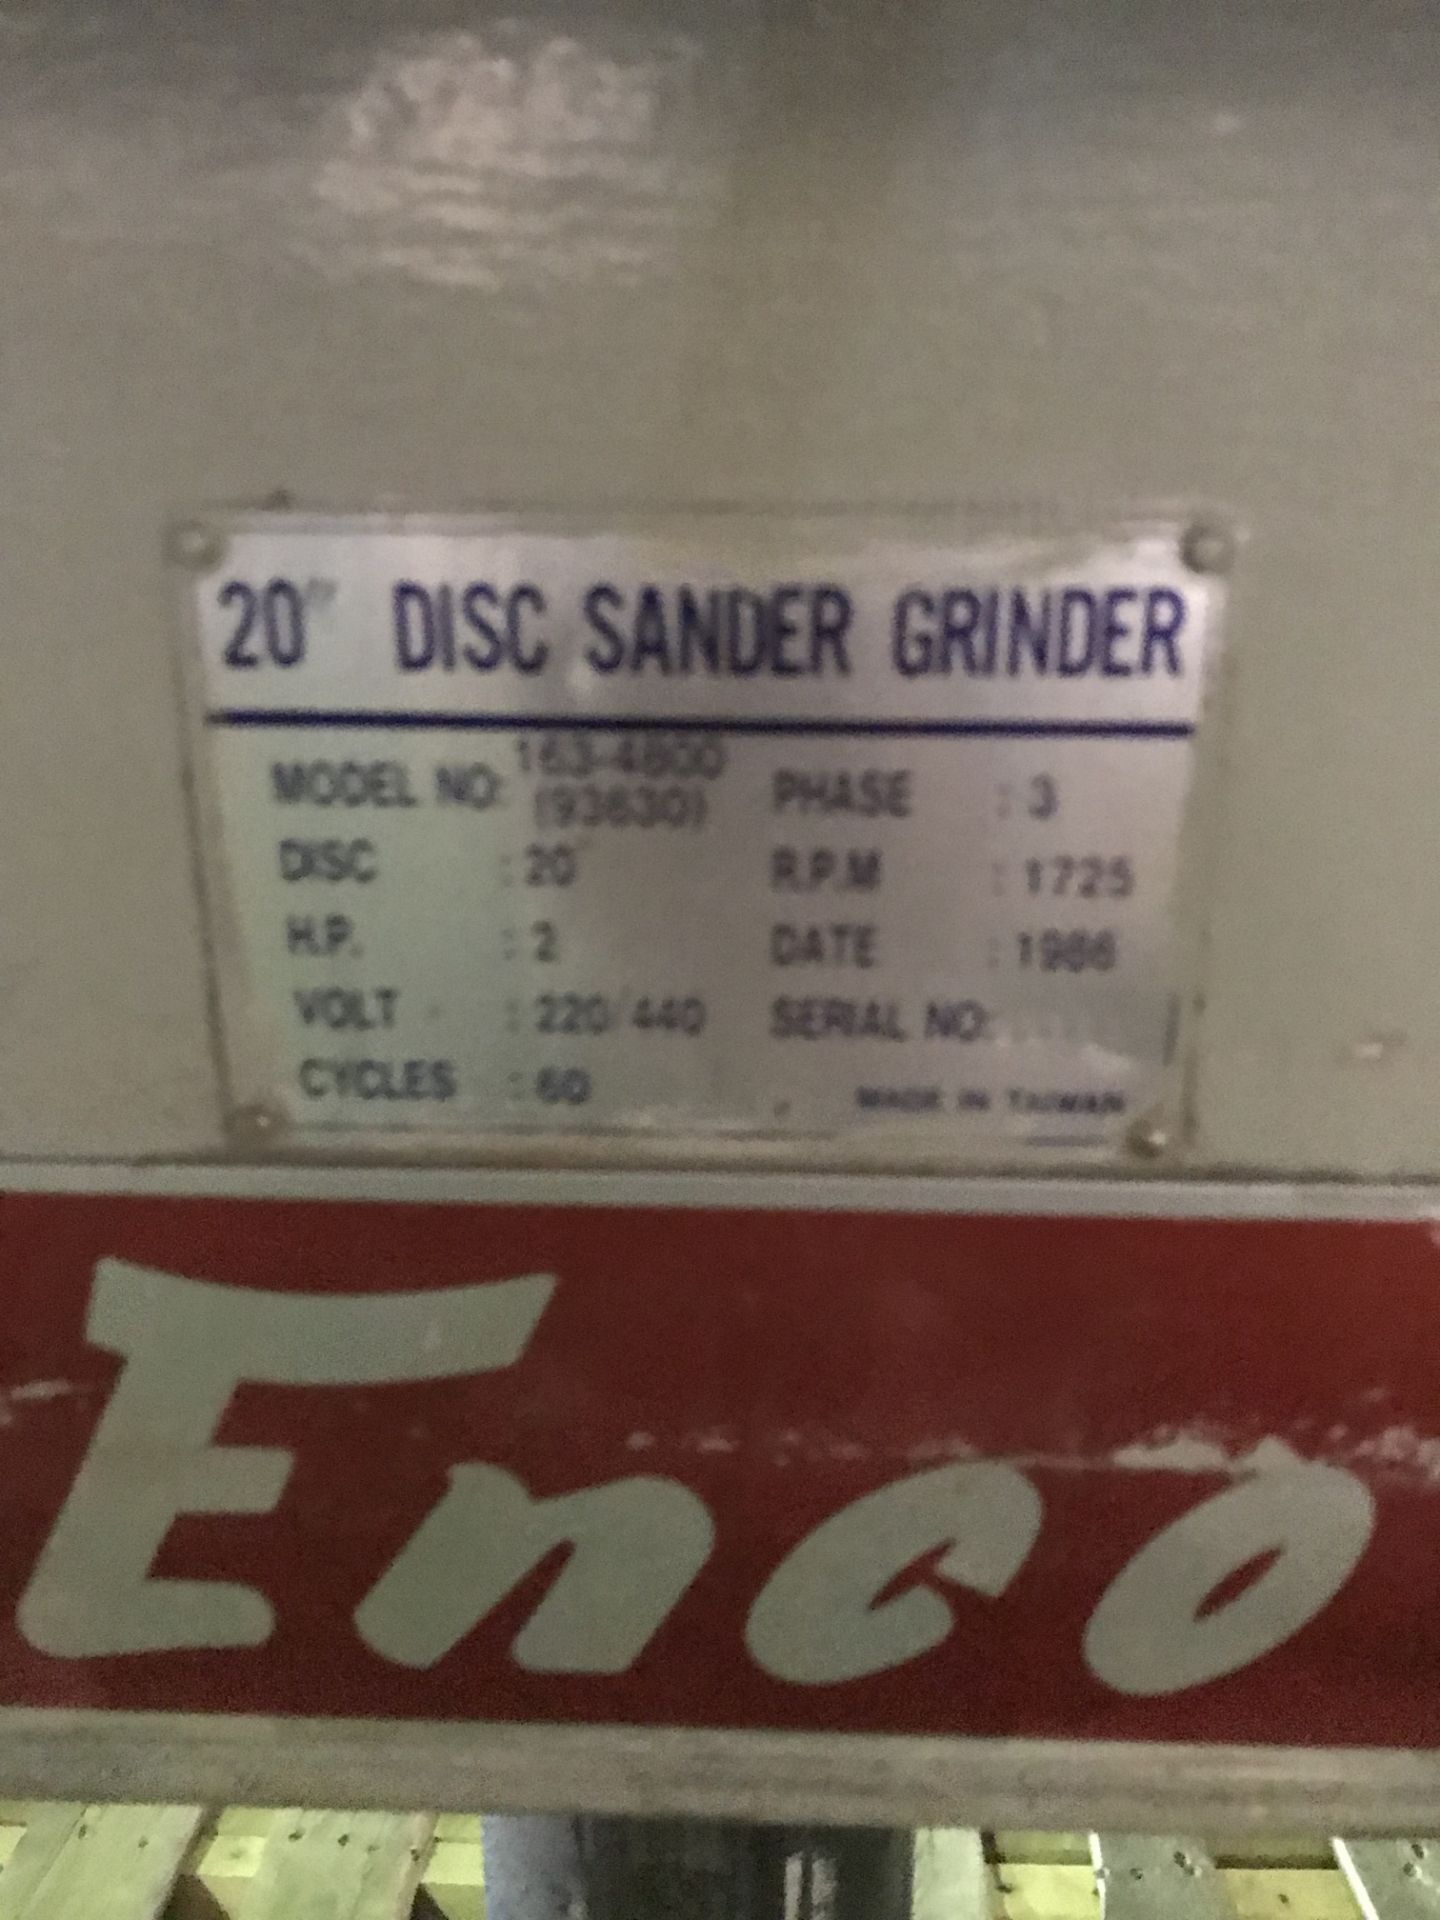 20" Enco Disc Sander/Grinder, Model 163-4800, 20" Disc, RPM: 1725, HP: 2 - Bild 3 aus 4